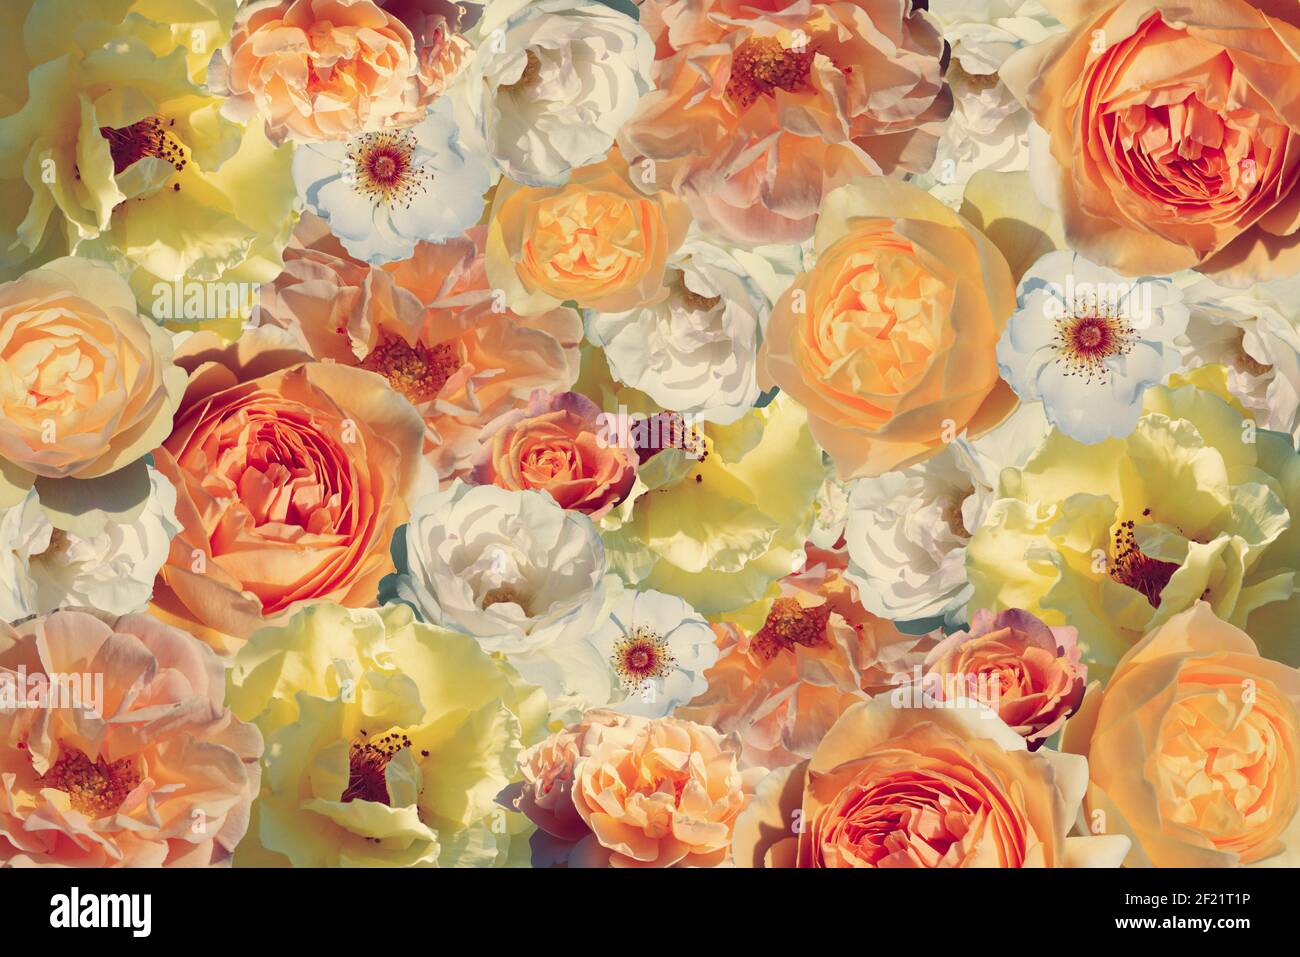 Gelbe Rosen Hintergrund. Für Hochzeitseinladung, Kosmetik, Grußkarte, Spa, Verpackung. Stockfoto